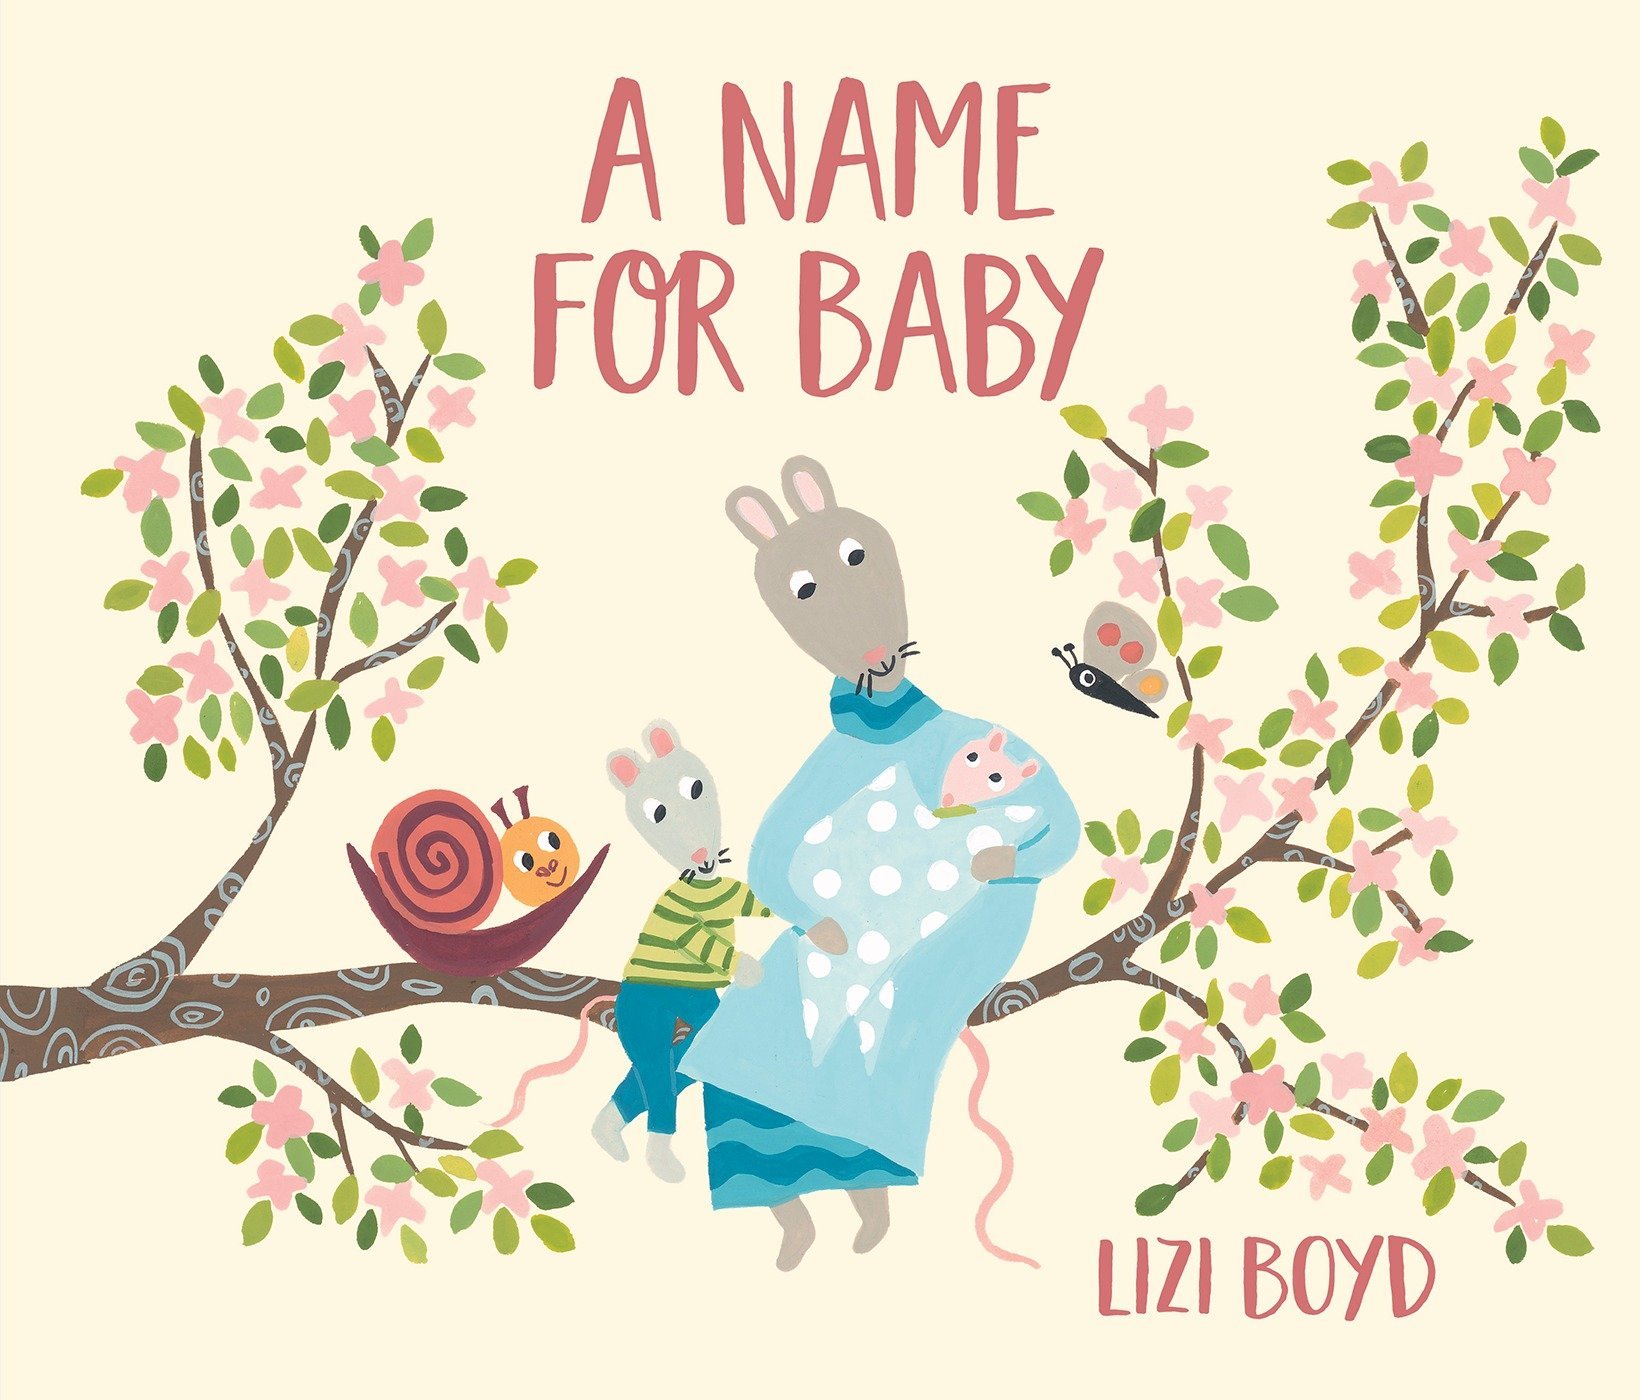 A name for baby - 7 cuốn sách tranh và hoạt động dạy trẻ về ý nghĩa của tên mình (Ảnh: Amazon)